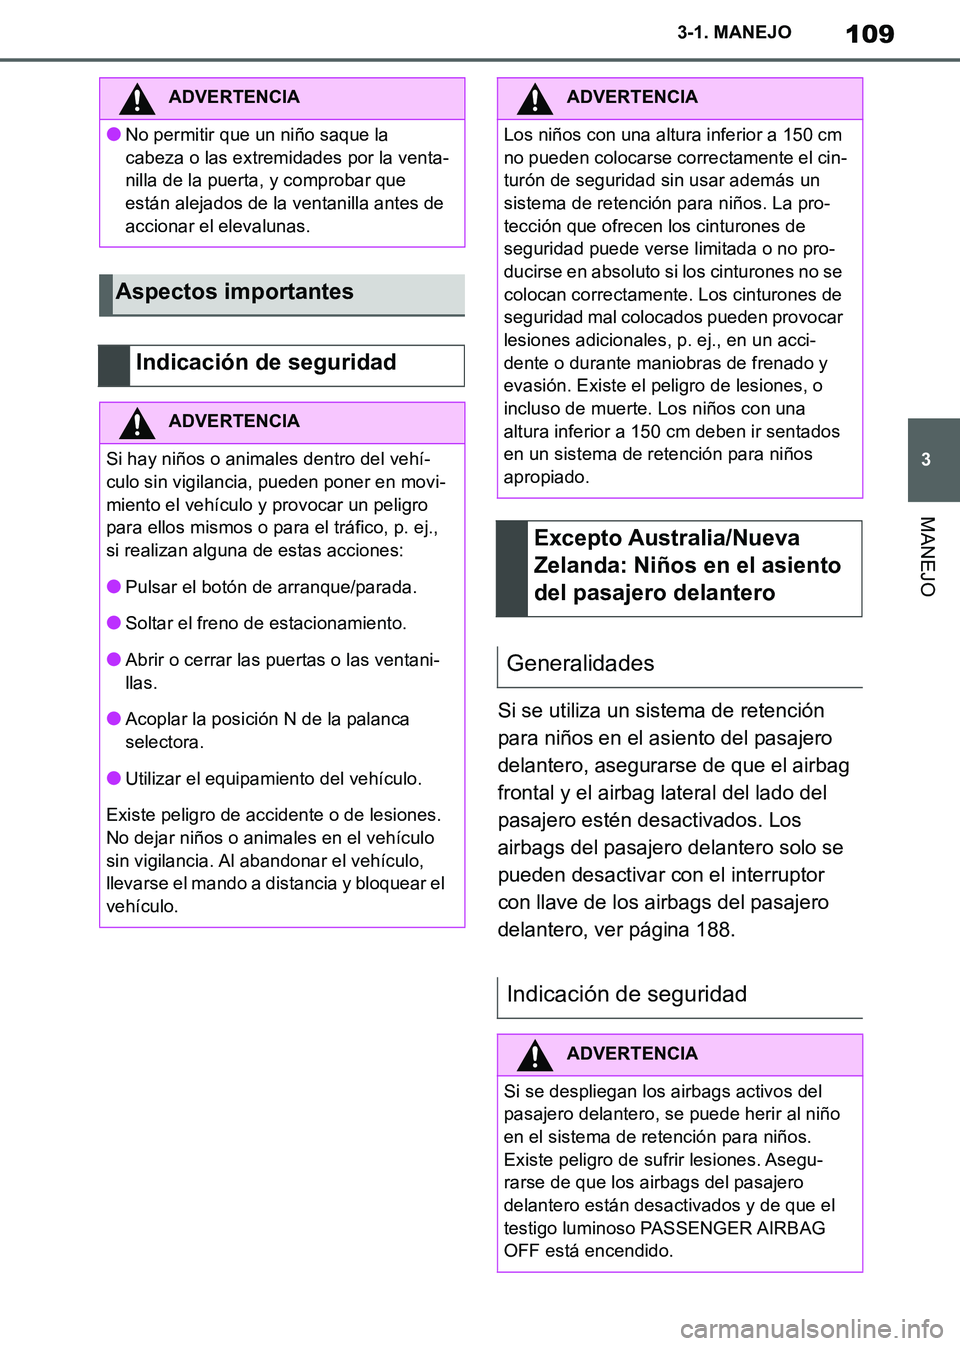 TOYOTA SUPRA 2019  Manuale de Empleo (in Spanish) 109
3
Supra Owners Manual_ES
3-1. MANEJO
MANEJO
Si se utiliza un sistema de retención 
para niños en el asiento del pasajero 
delantero, asegurarse de que el airbag 
frontal y el airbag lateral del